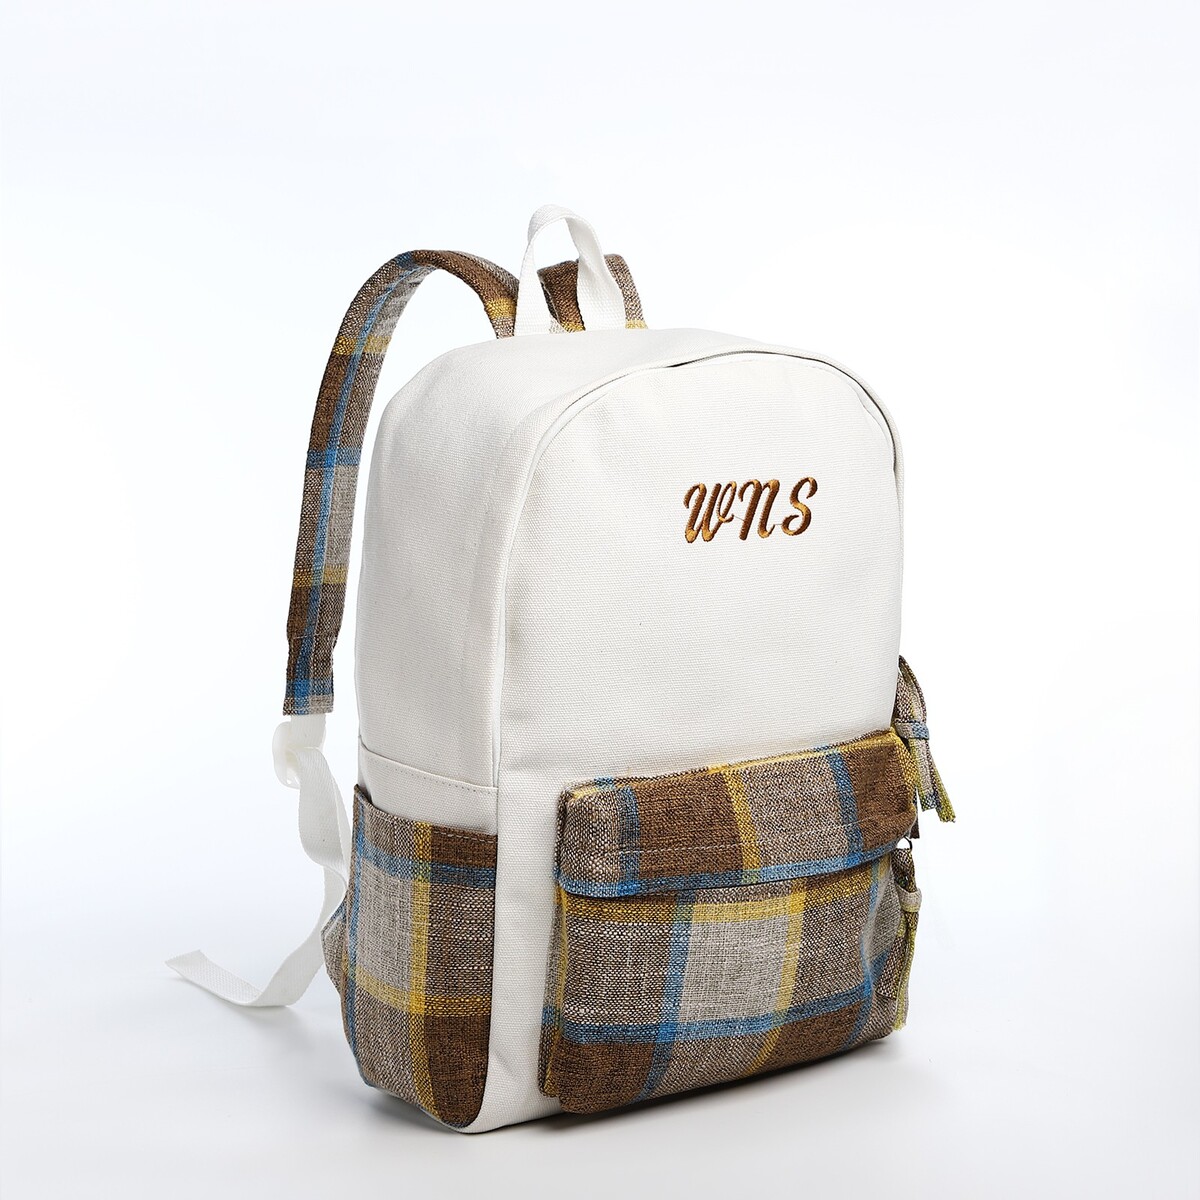 Рюкзак молодежный из текстиля, 3 кармана, цвет белый/коричневый/голубой рюкзак молодежный на молнии 3 кармана коричневый